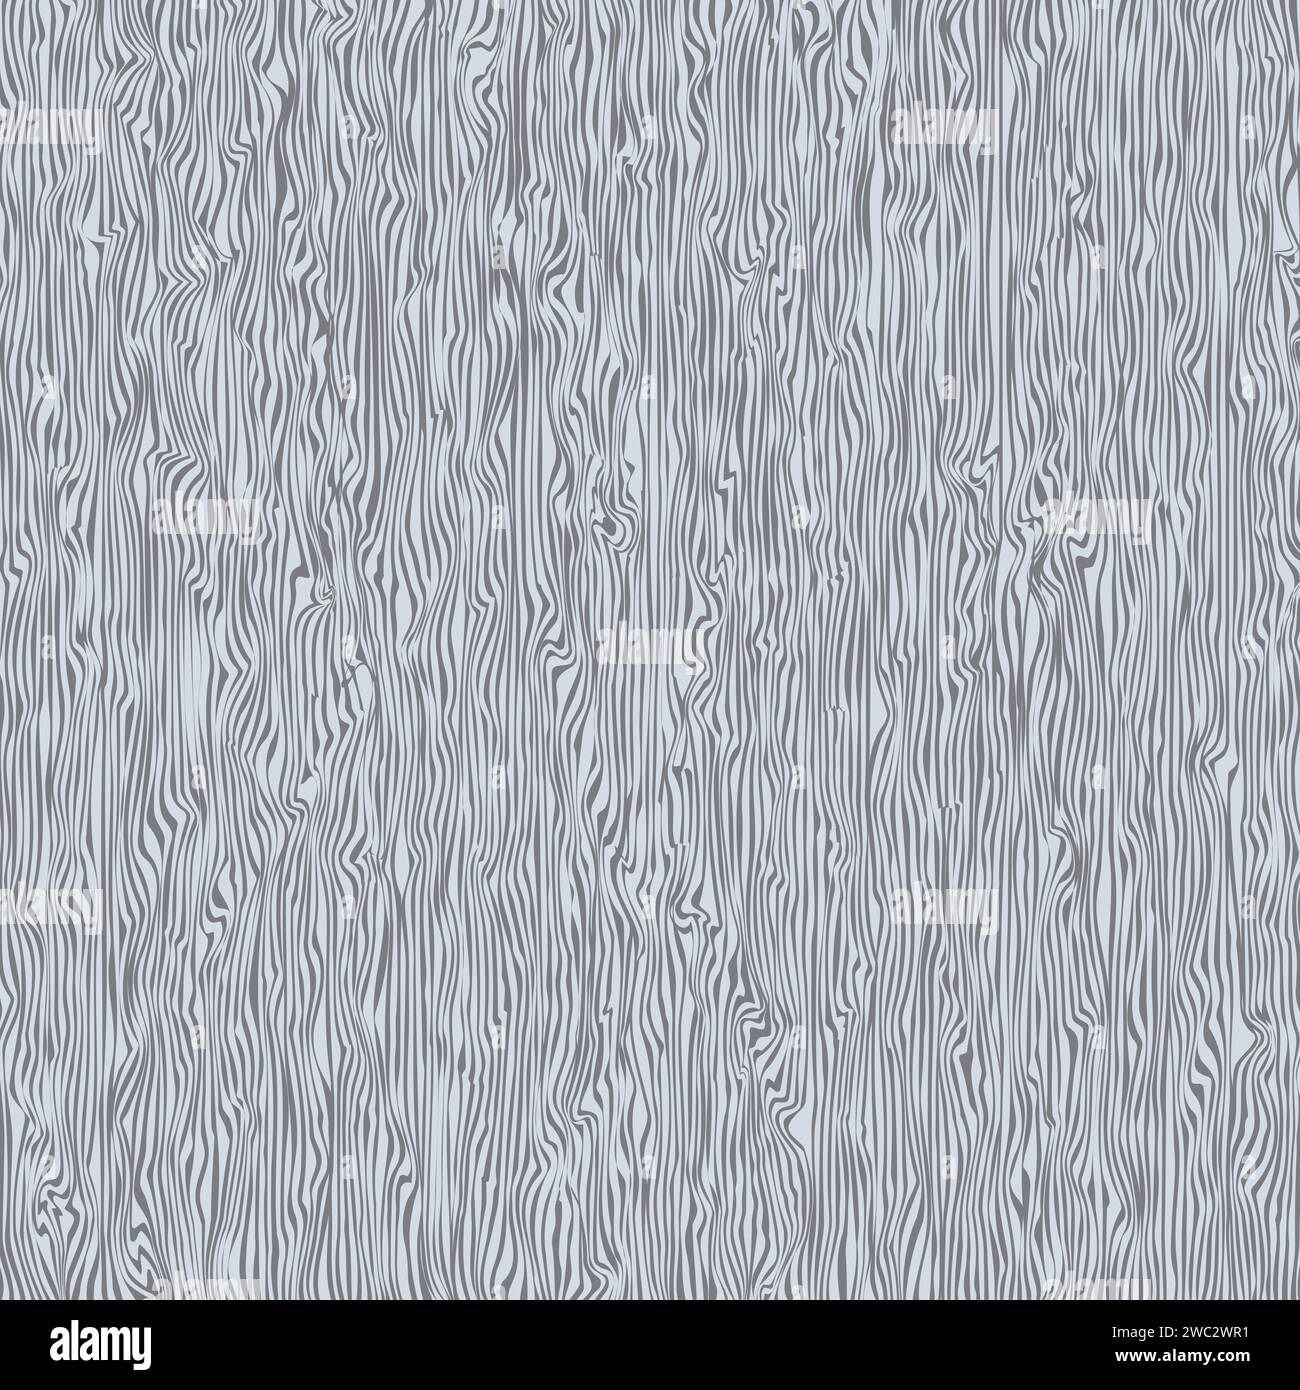 Wooden grey texture. Vector background Stock Vector